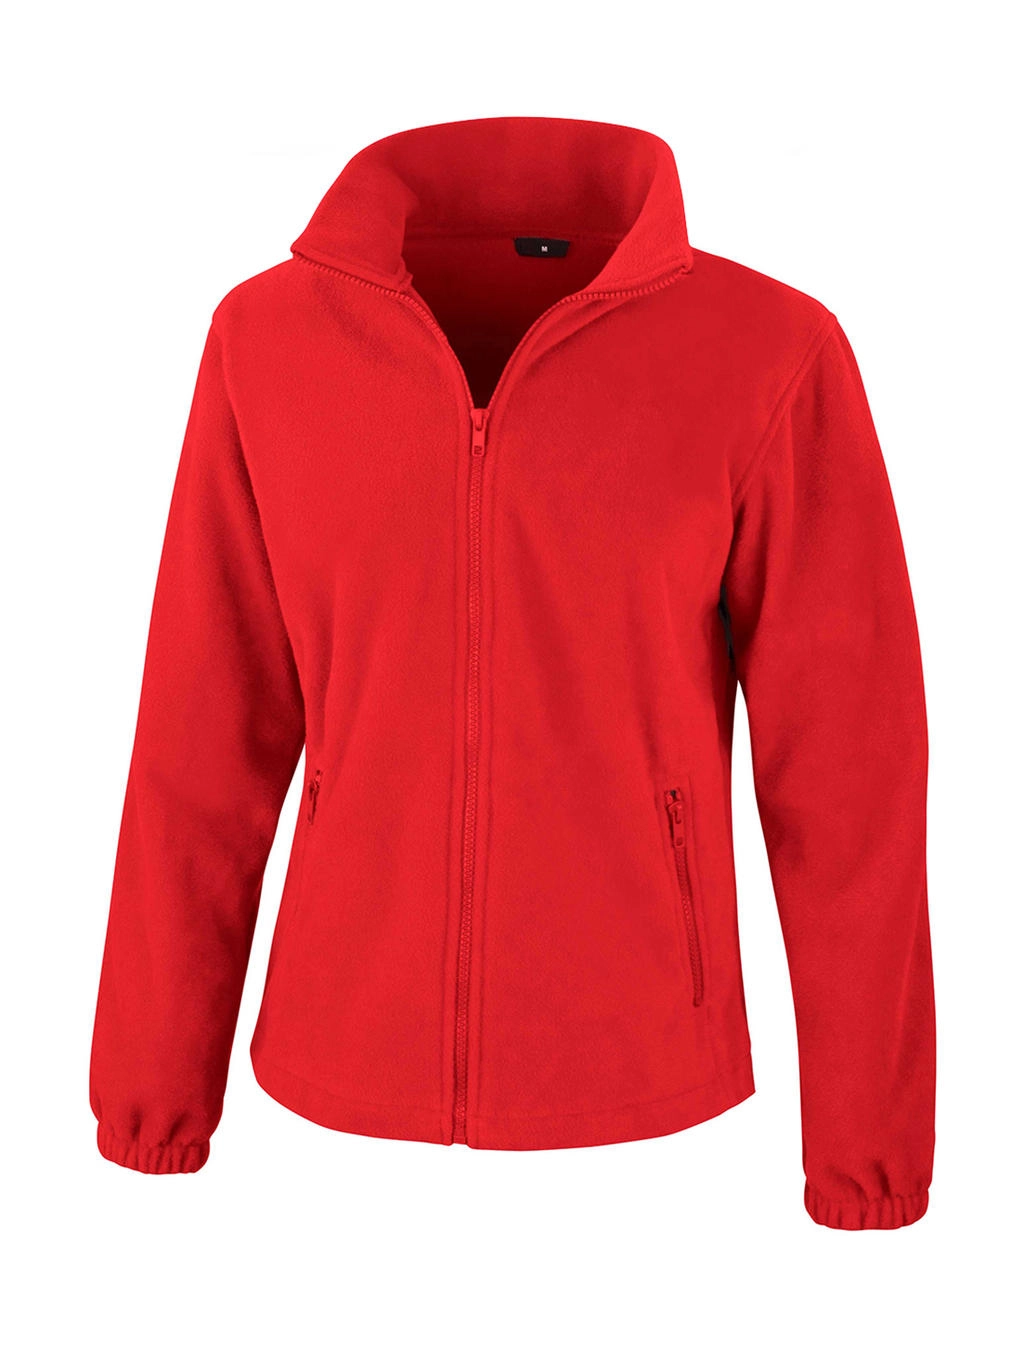 Womens Fashion Fit Outdoor Fleece zum Besticken und Bedrucken in der Farbe Flame Red mit Ihren Logo, Schriftzug oder Motiv.